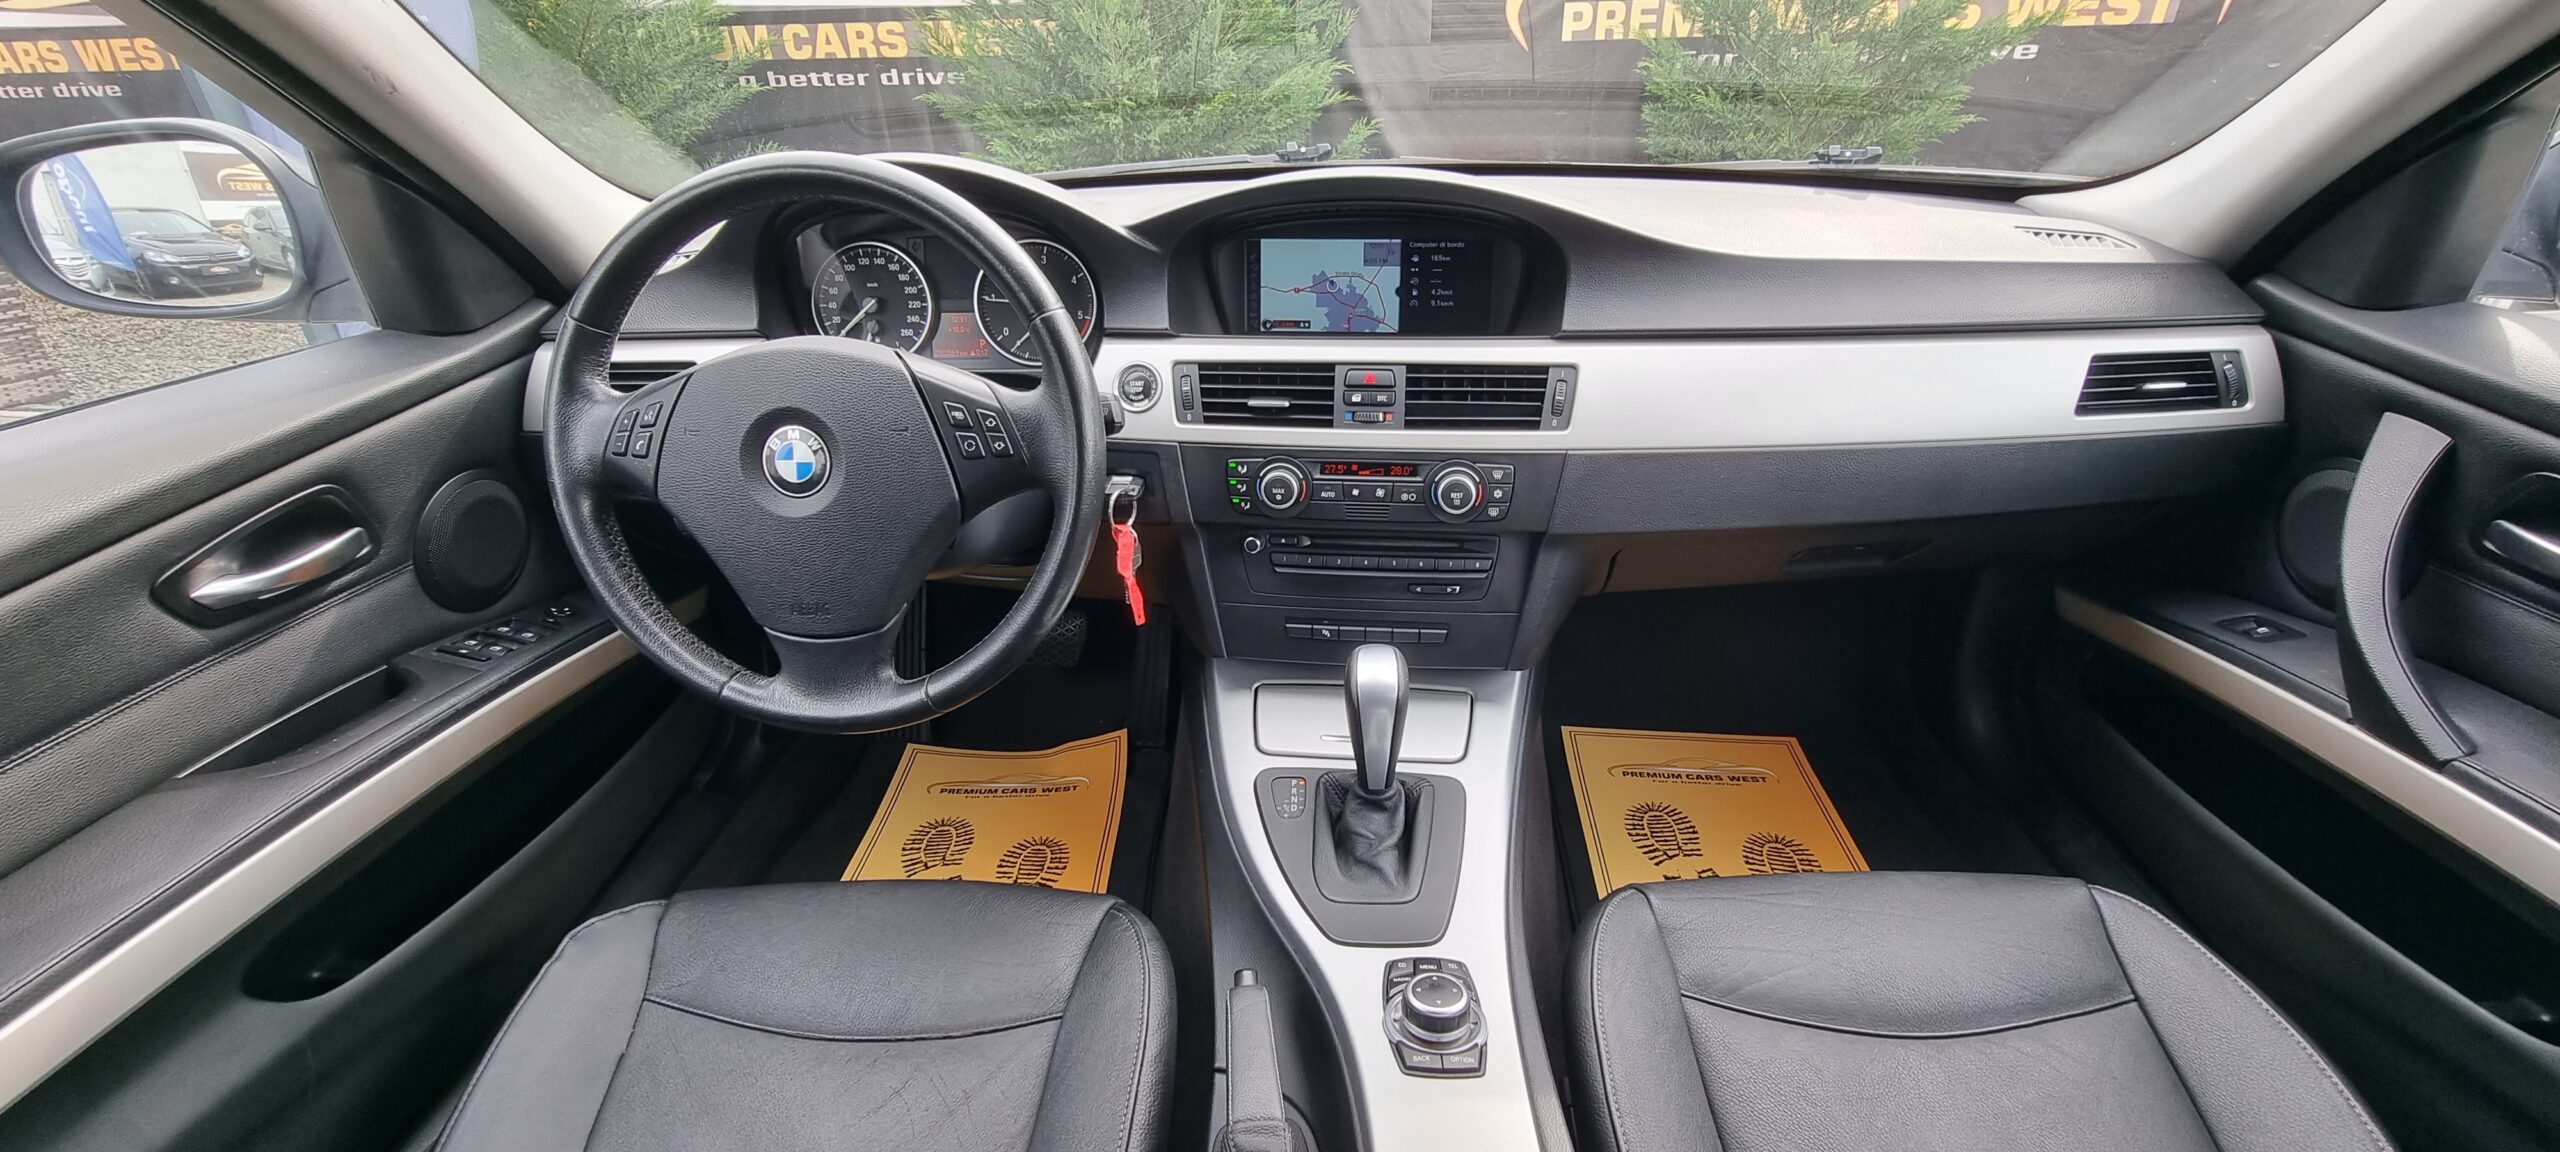 BMW SERIA 3, 2.0 DIESEL, 177CP, EURO 5, AN 2009